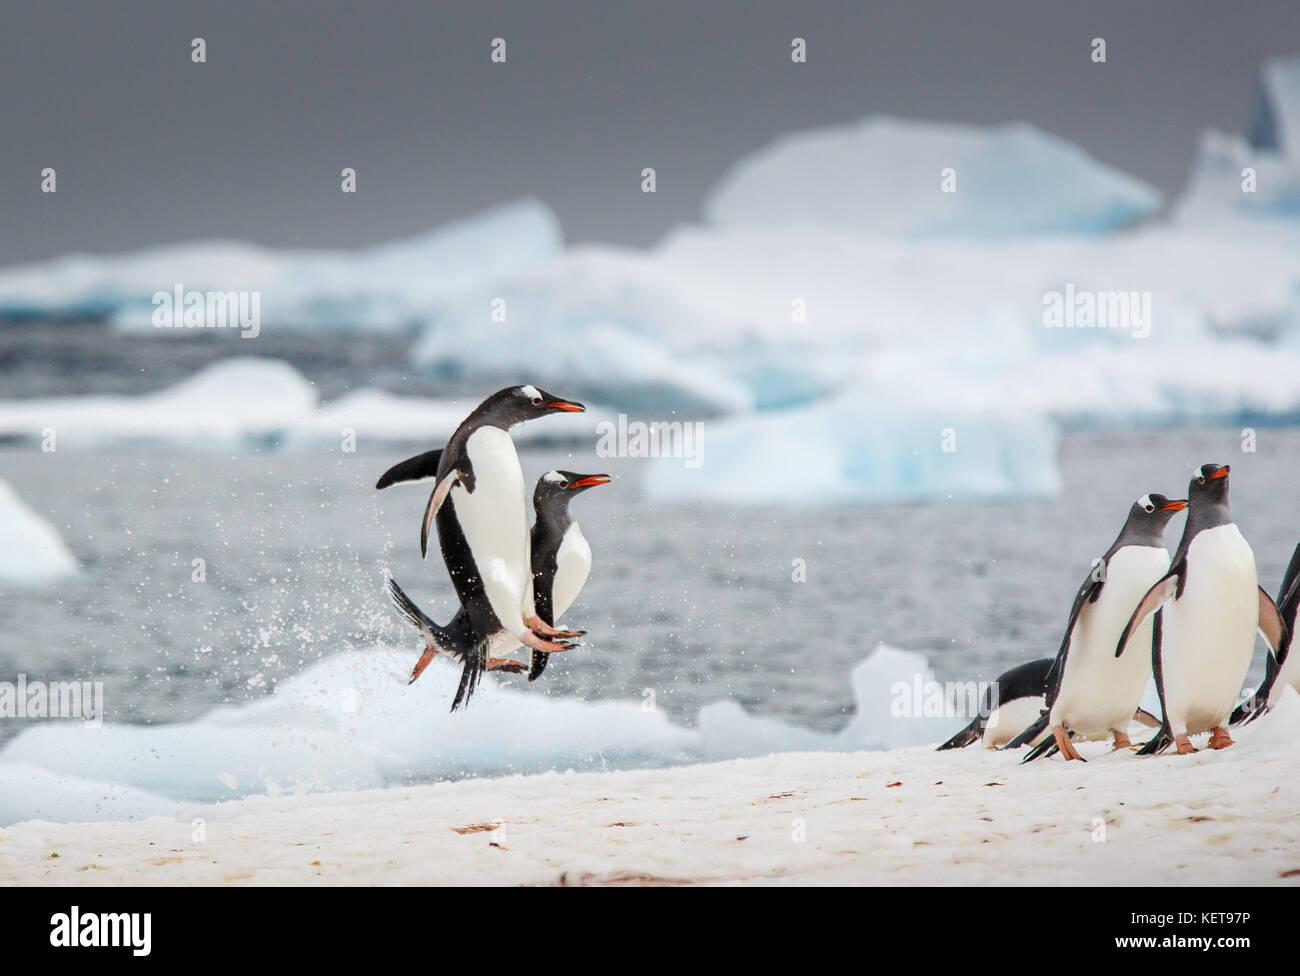 Unglaubliche Bilder haben eine WATSCHELN von Gentoo Penguins tanzen am Wasser wie eine Szene aus der hit Animationsfilm Happy Feet erfasst. Der stun Stockfoto